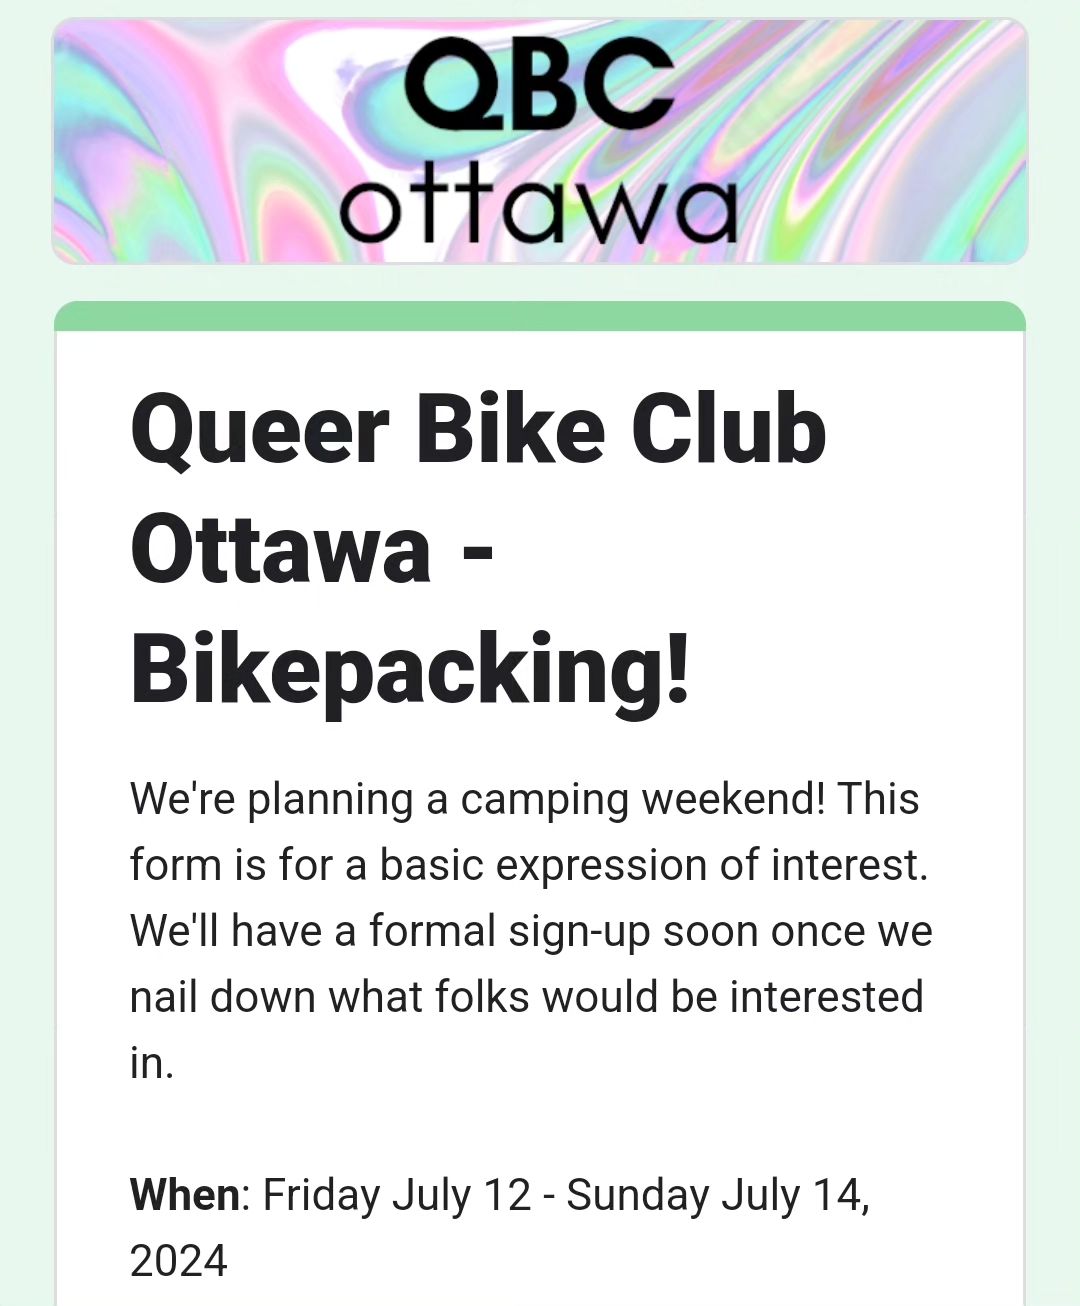 Bikepacking with the Queer Bike Club Ottawa